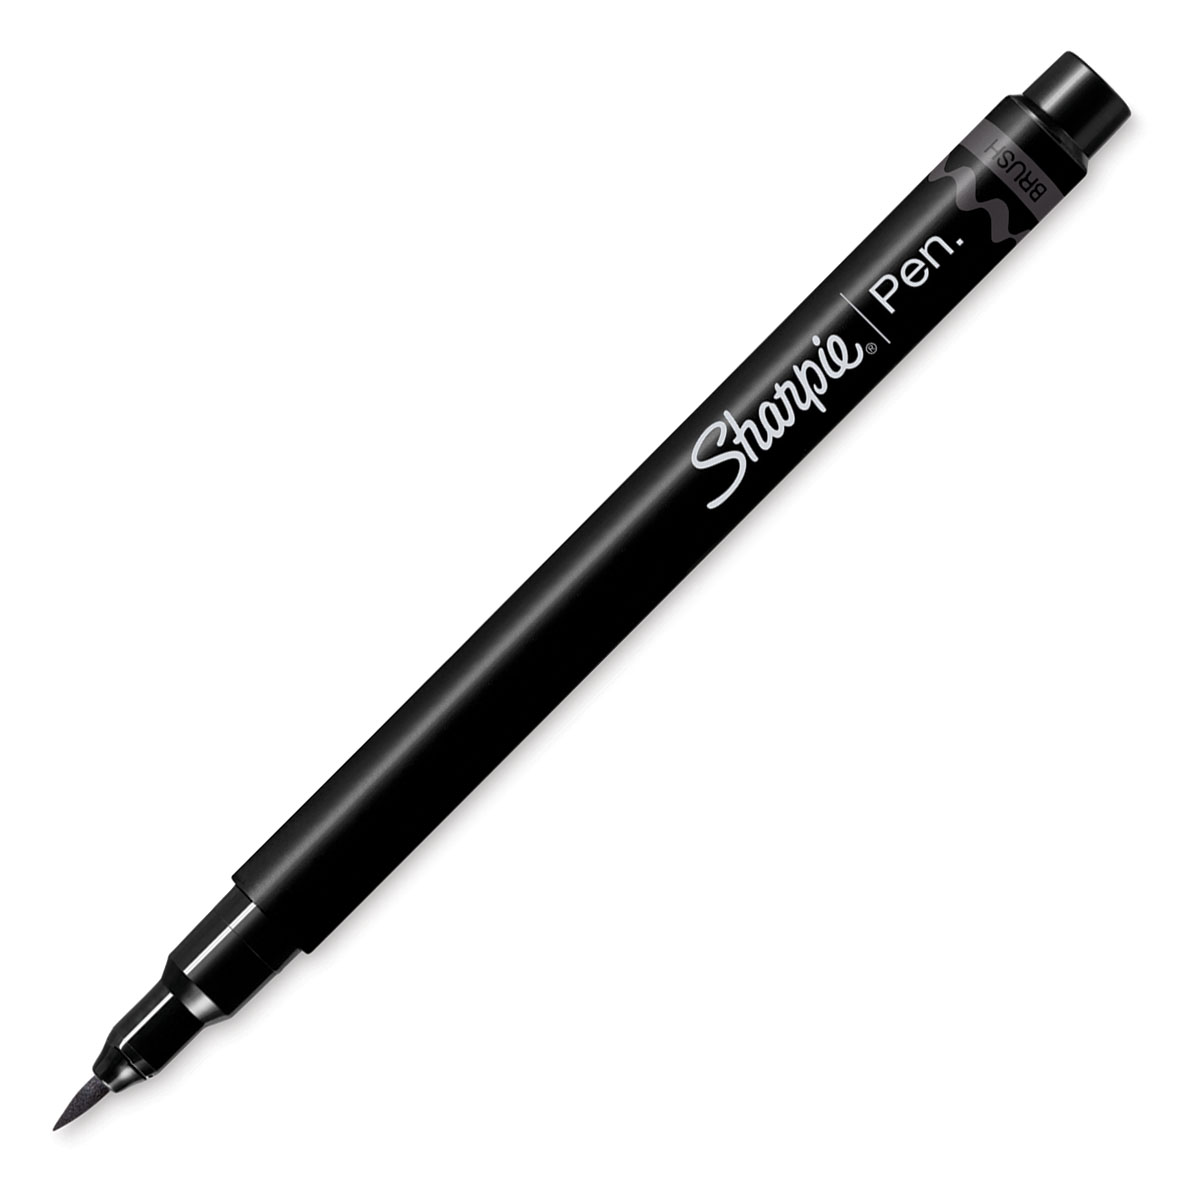 NEW Sharpie Brush Pen Demo - Blending Markers, Brush Tip Pens, Sharpies 